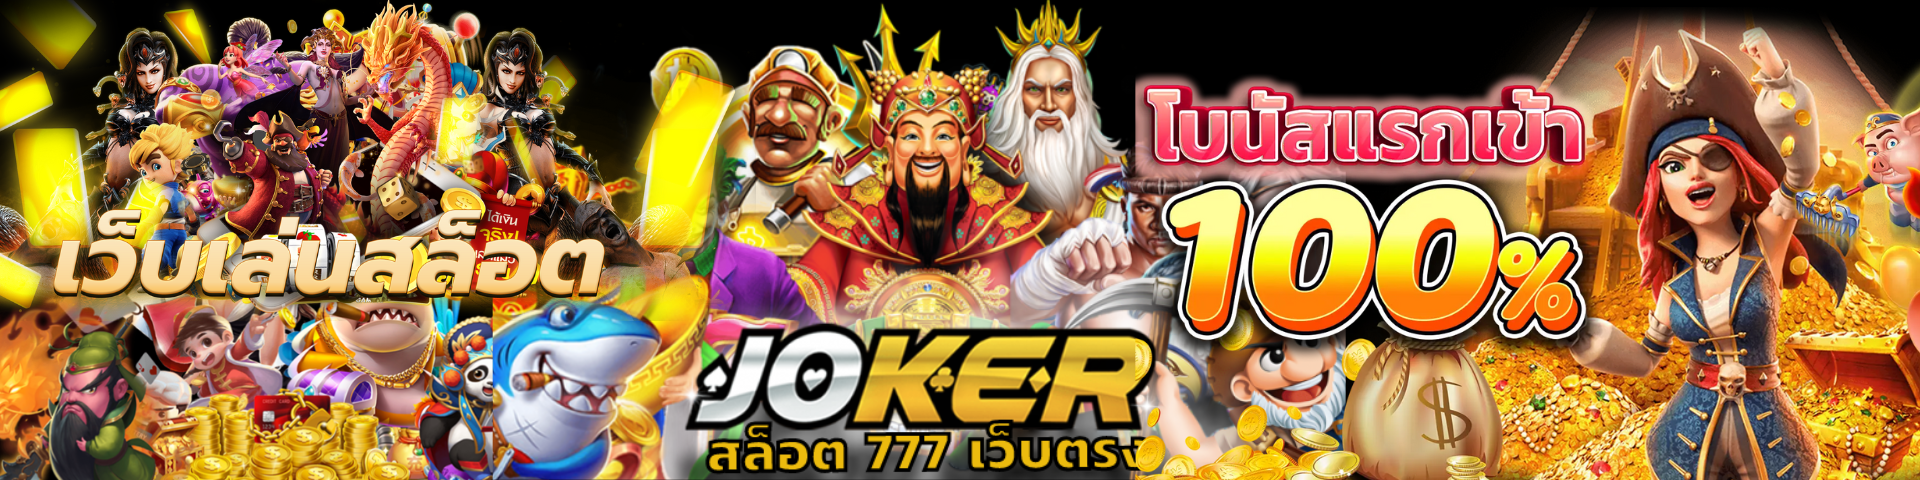 JOKER สล็อต777 - Joker Slot เกมสล็อตออนไลน์ 24 ชั่วโมง คลิกเลย